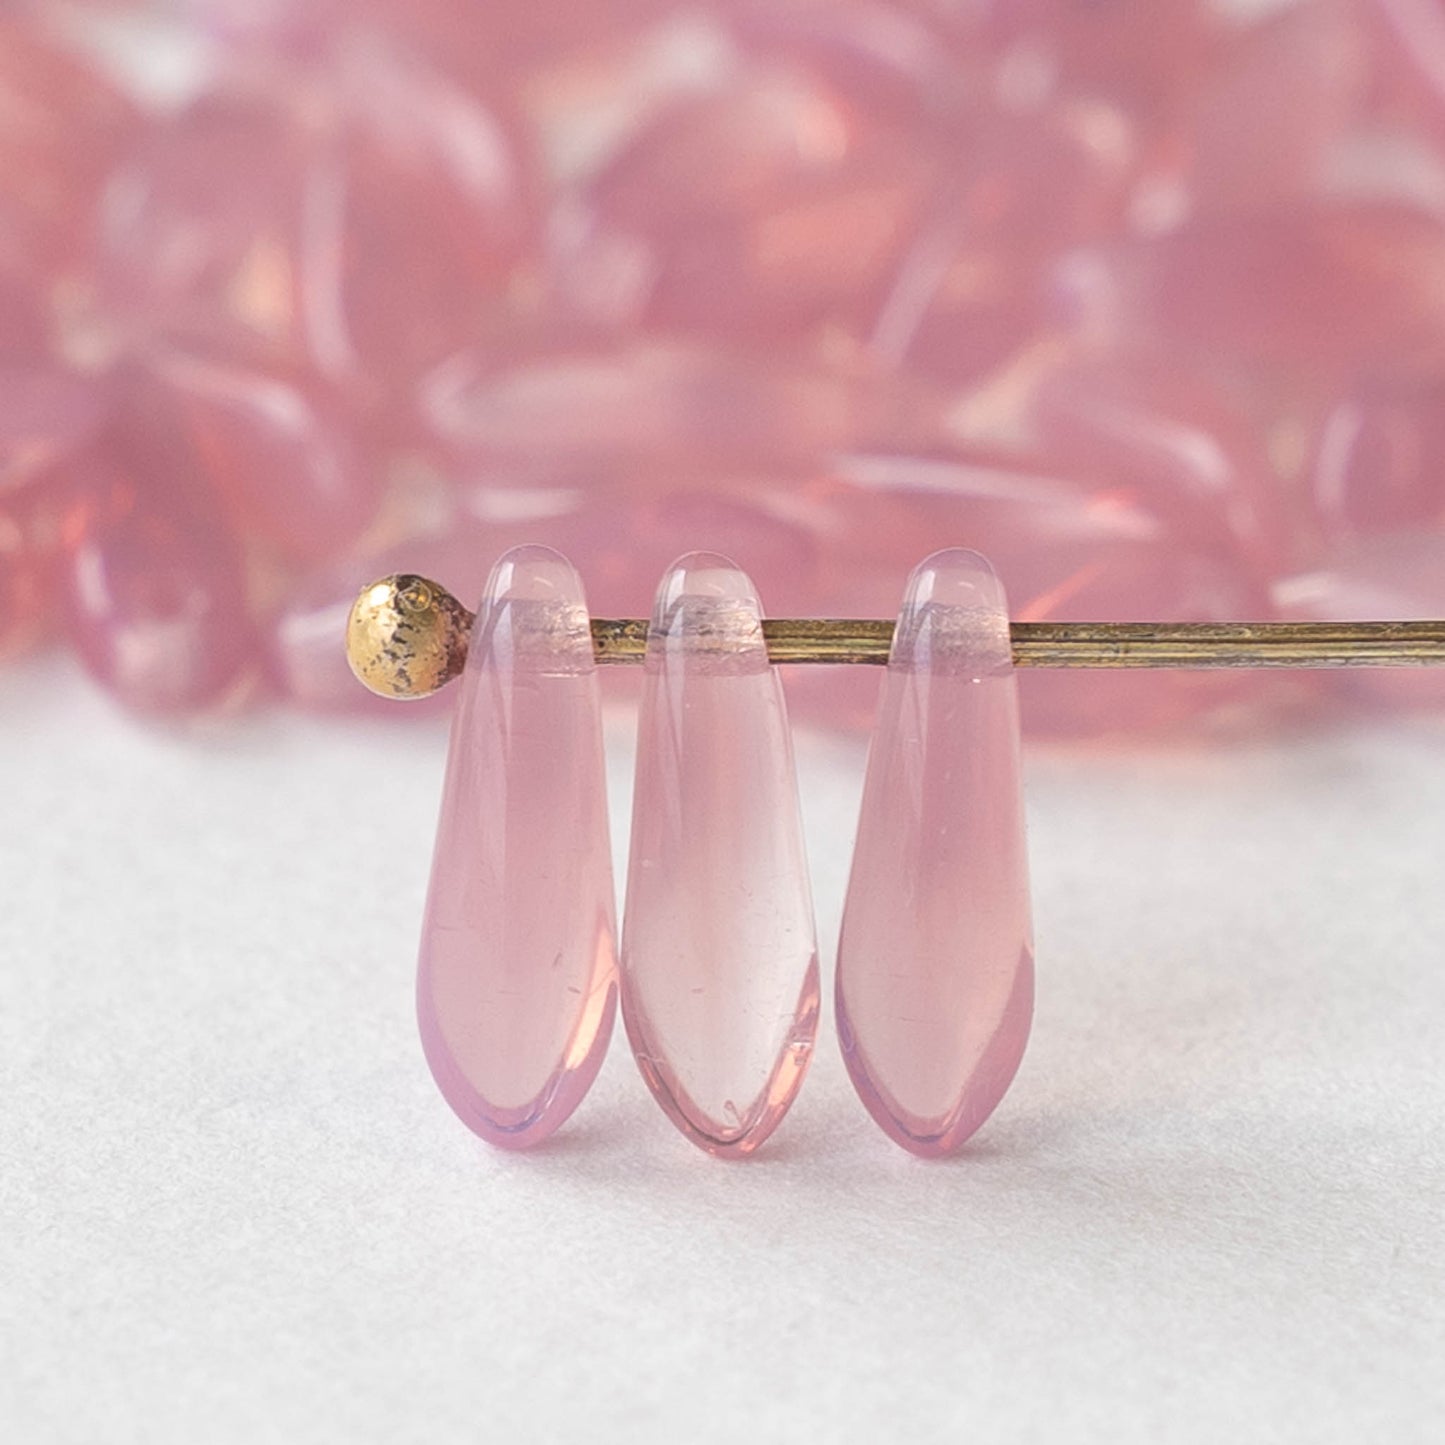 11mm Dagger Beads - Rose Opaline - 50 beads